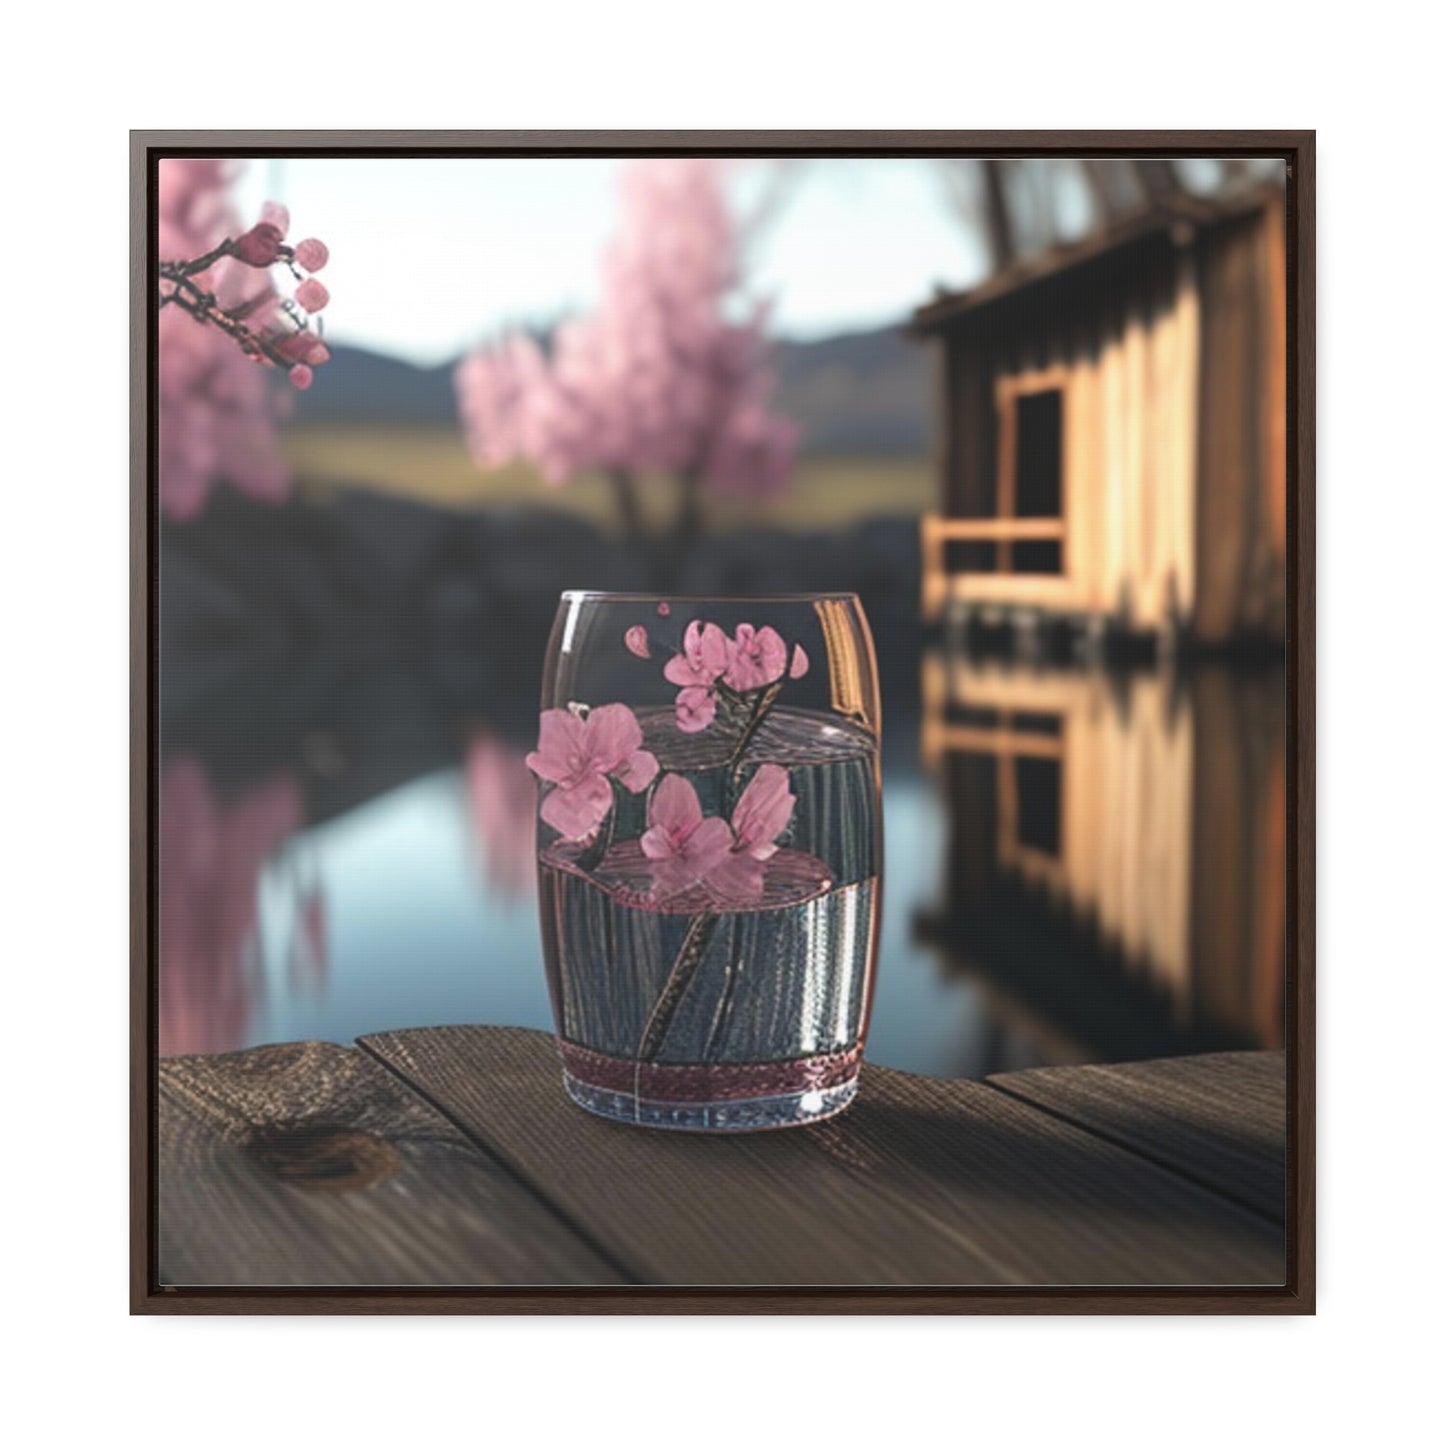 Gallery Canvas Wraps, Square Frame Cherry Blossom 1